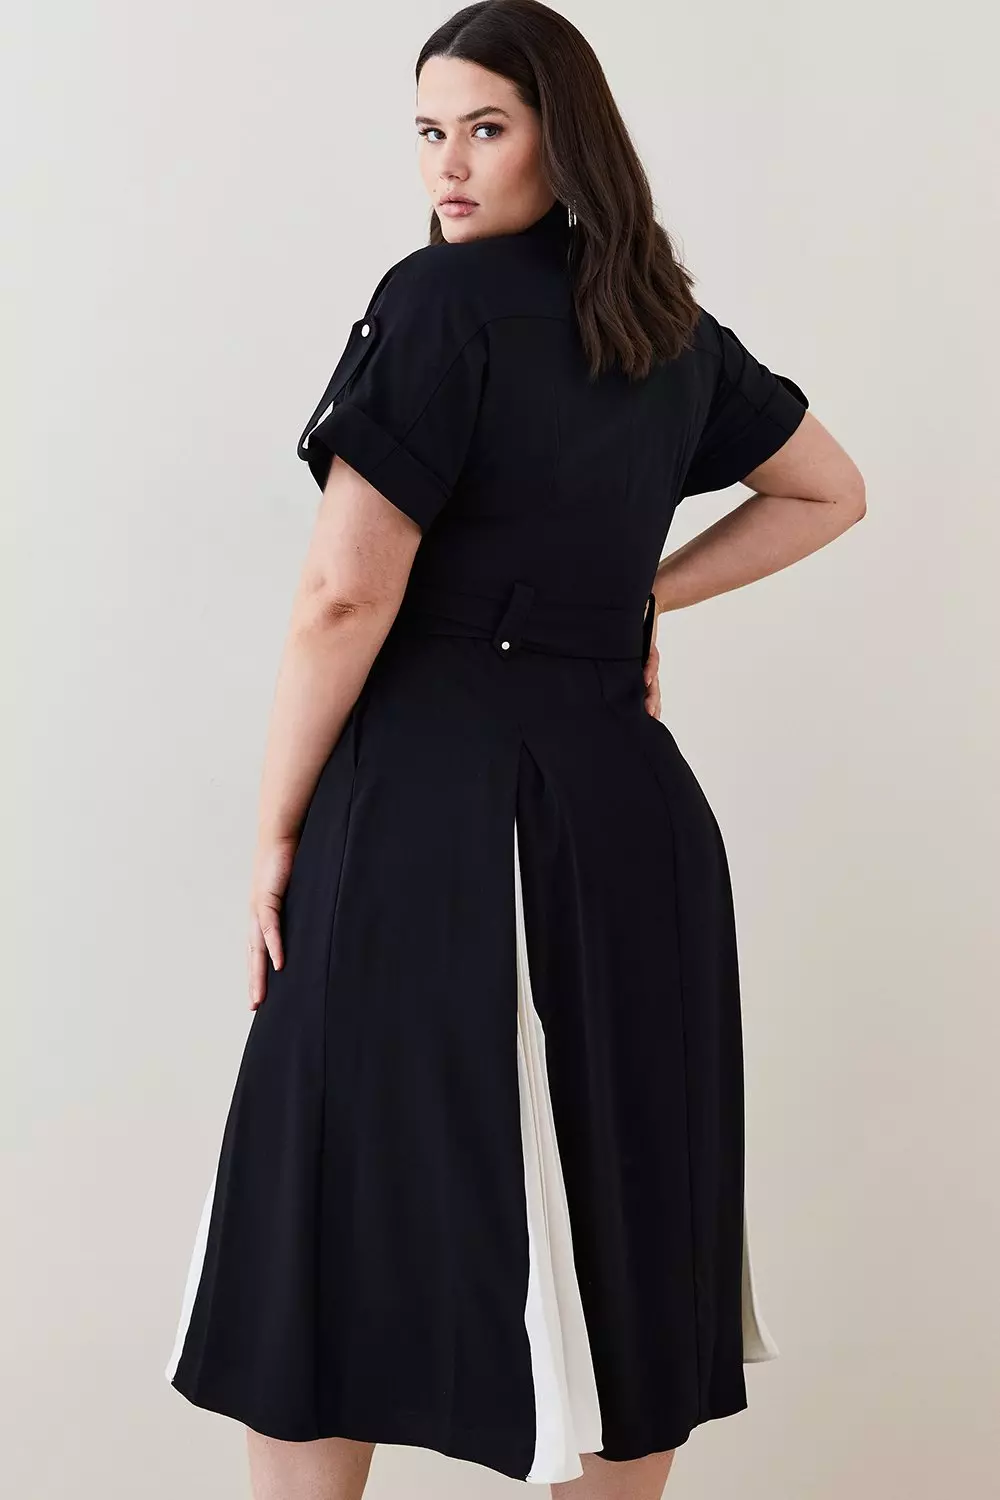 Unique Vintage Plus Size Black Button Swing Dress